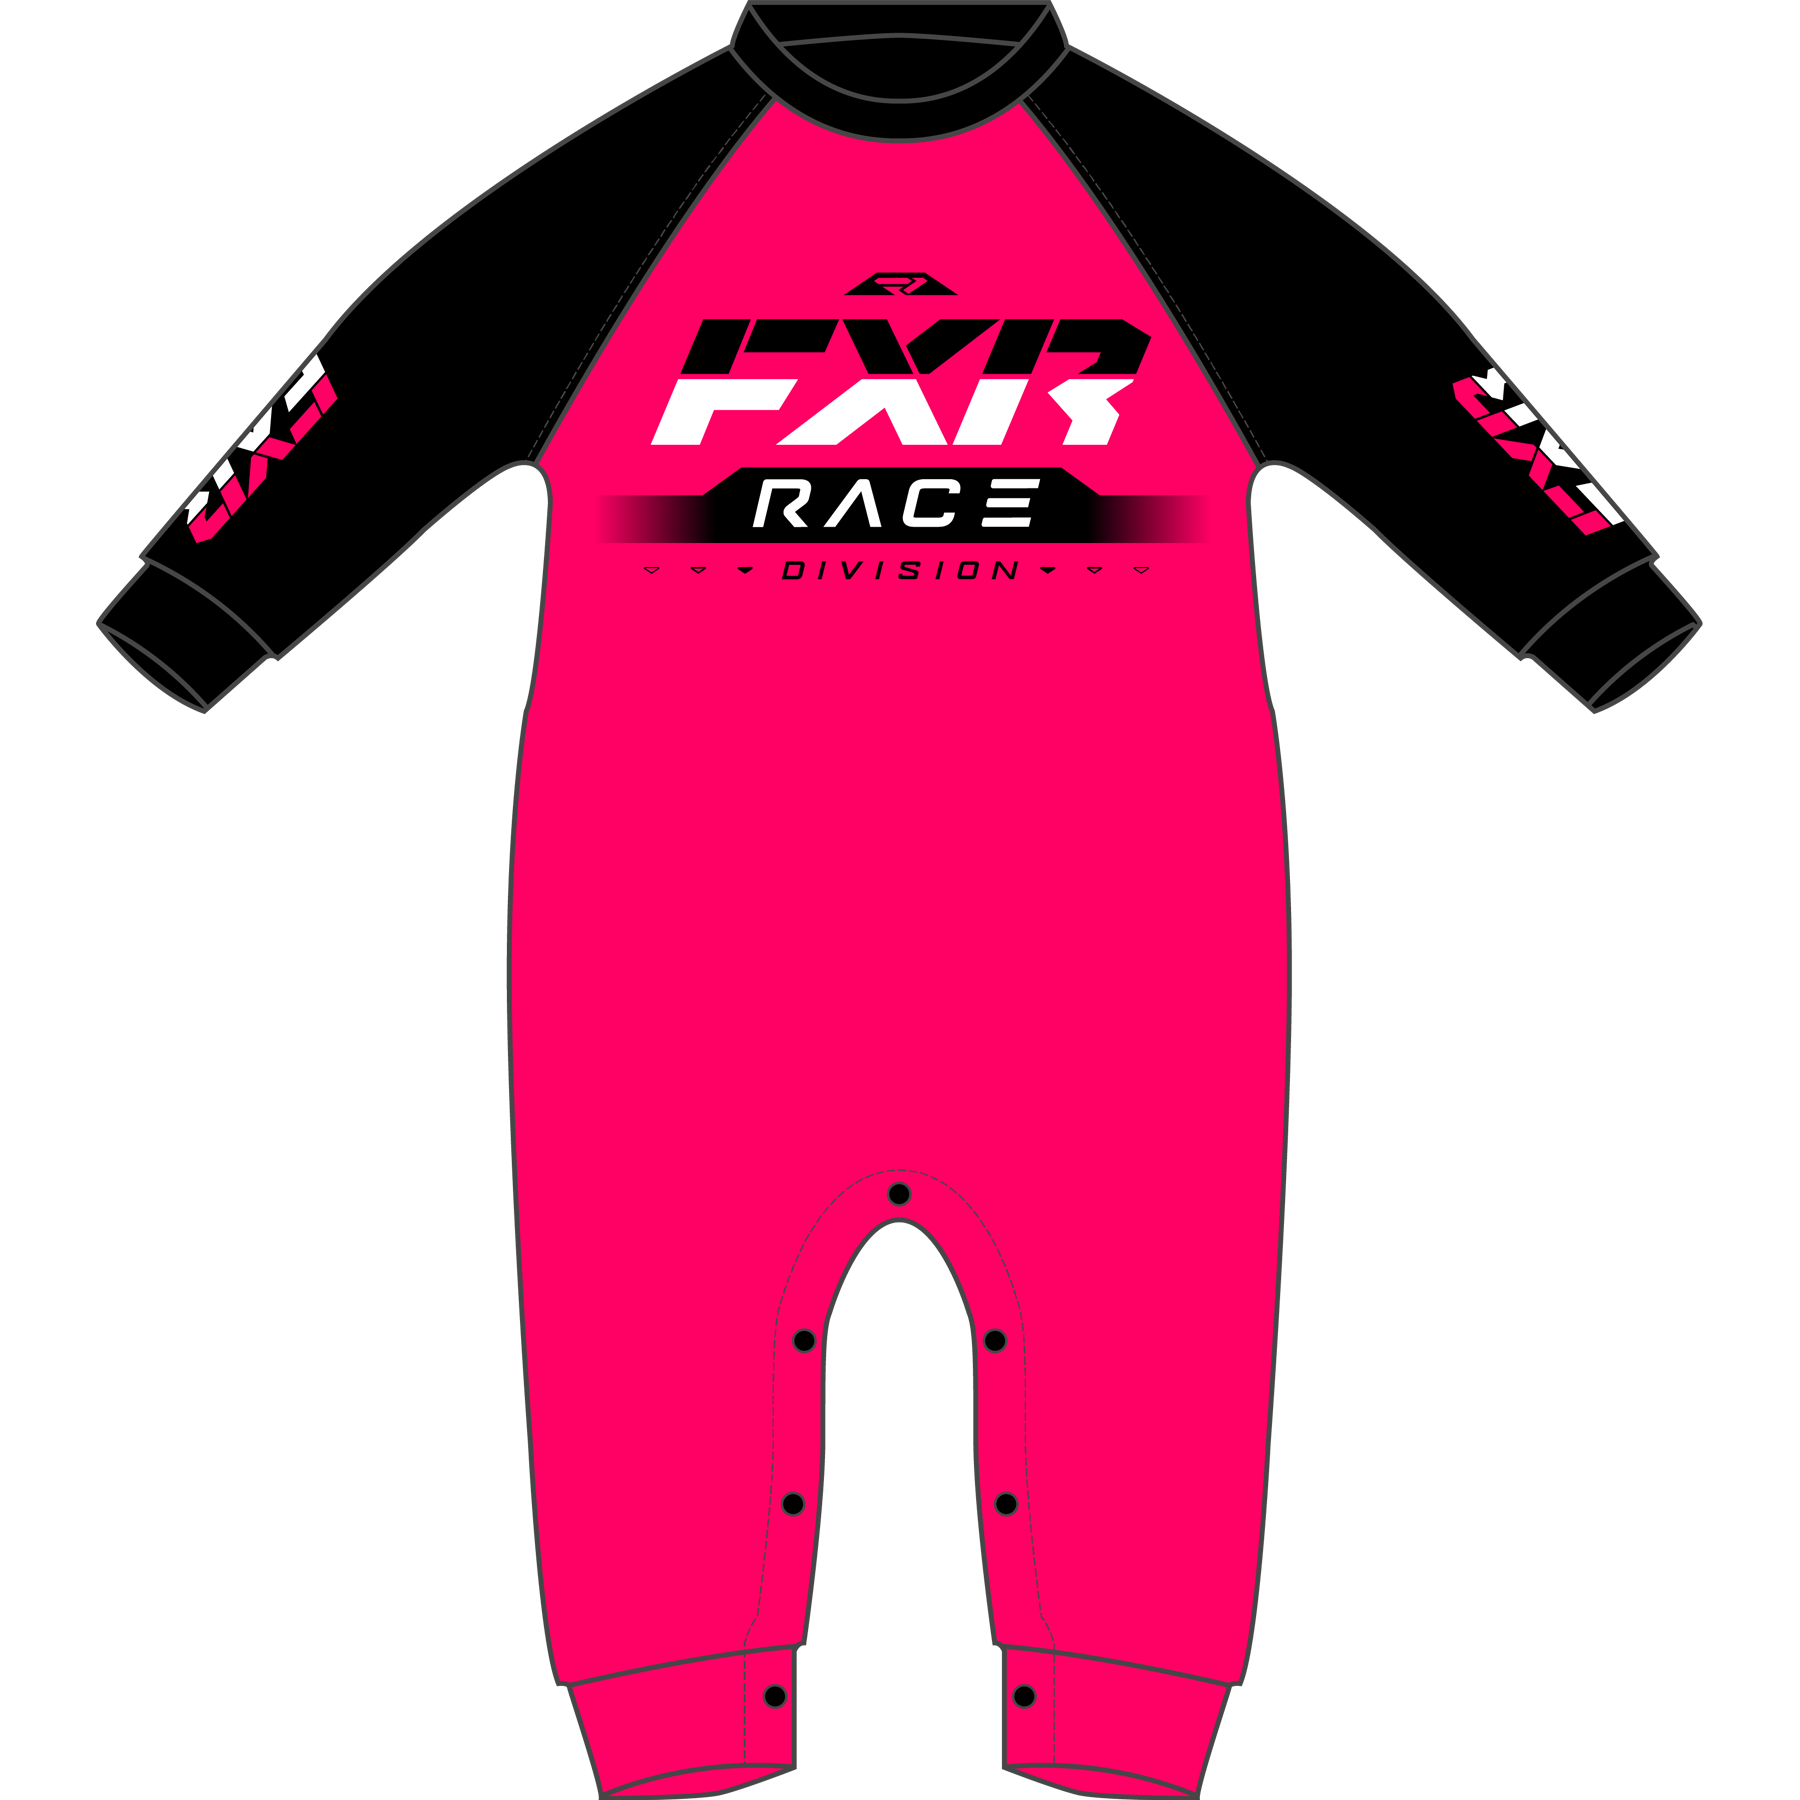 fxr racing pajamas infant race div onesie pajamas - casual